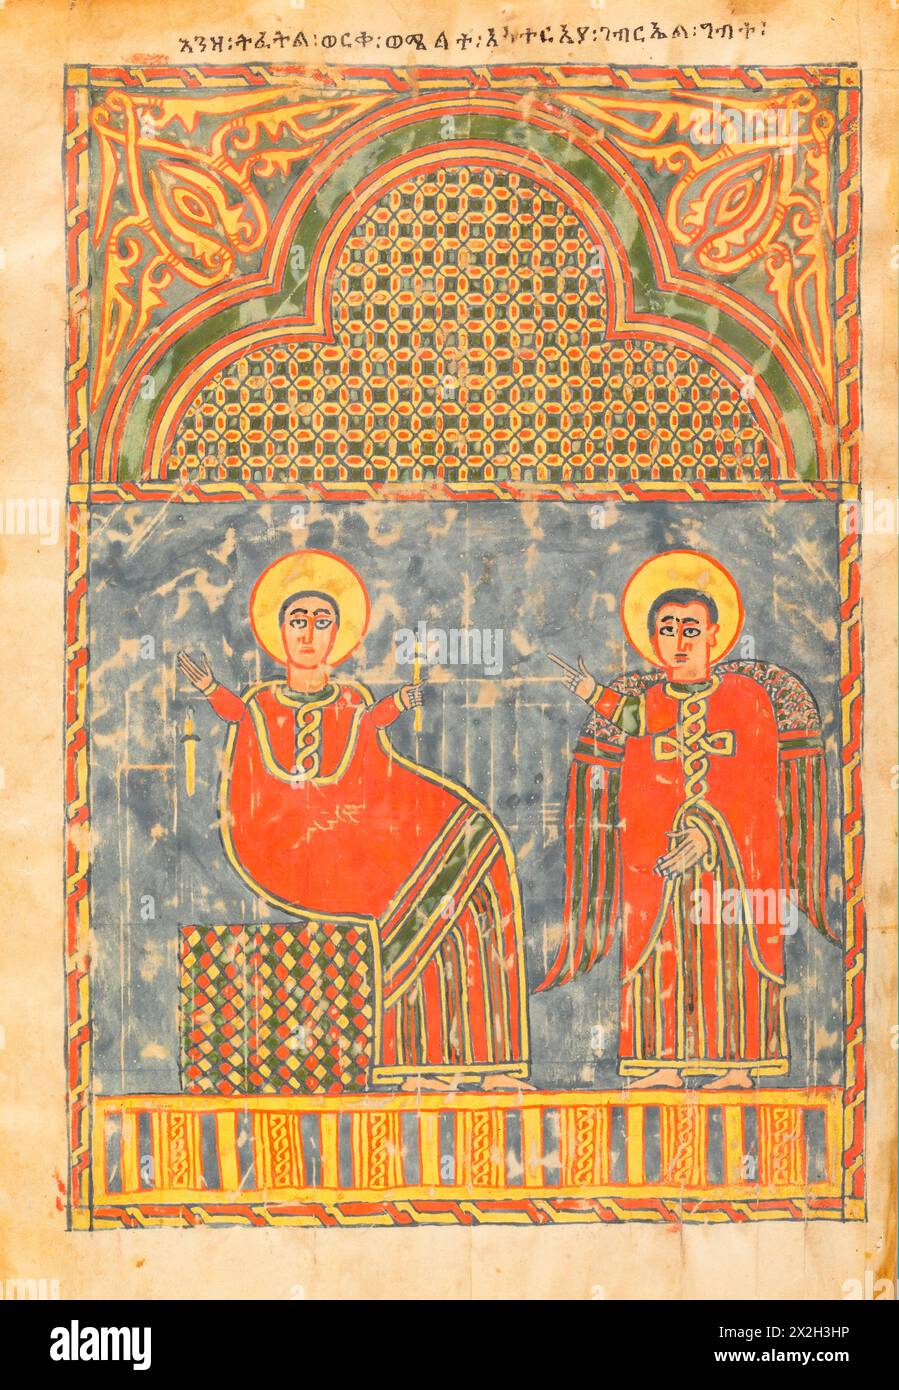 Evangile illuminé - peuples Amhara - L'Annonciation à Marie - fin du XIVe au début du XVe siècle Banque D'Images